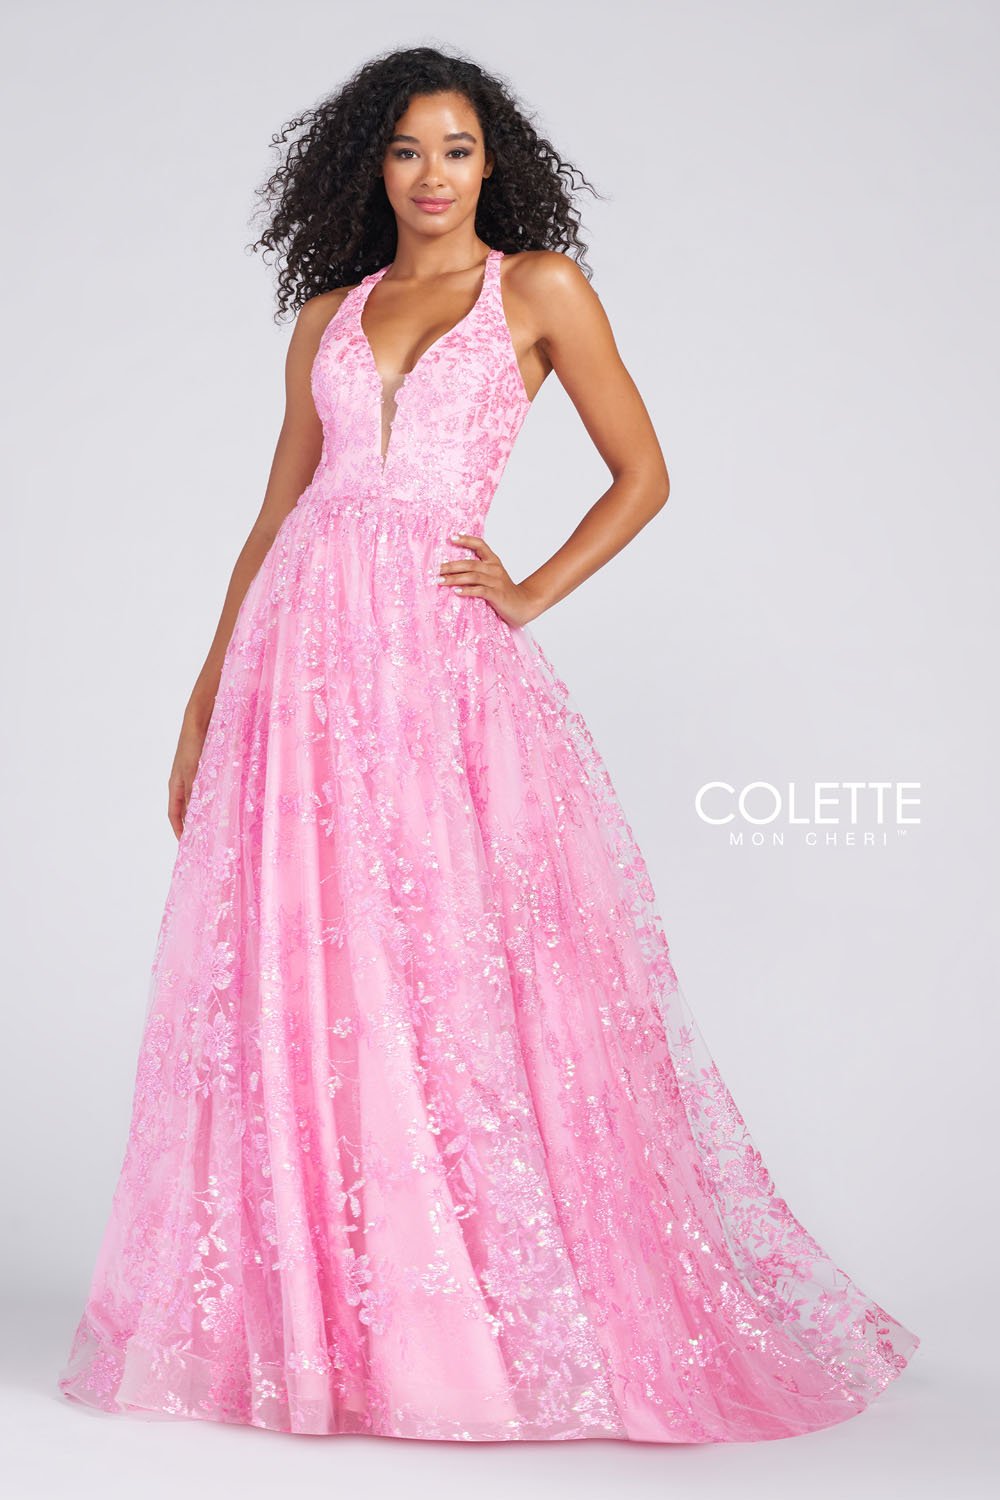 Colette CL12223 Bubblegum prom dresses.  Bubblegum prom dresses image by Colette.